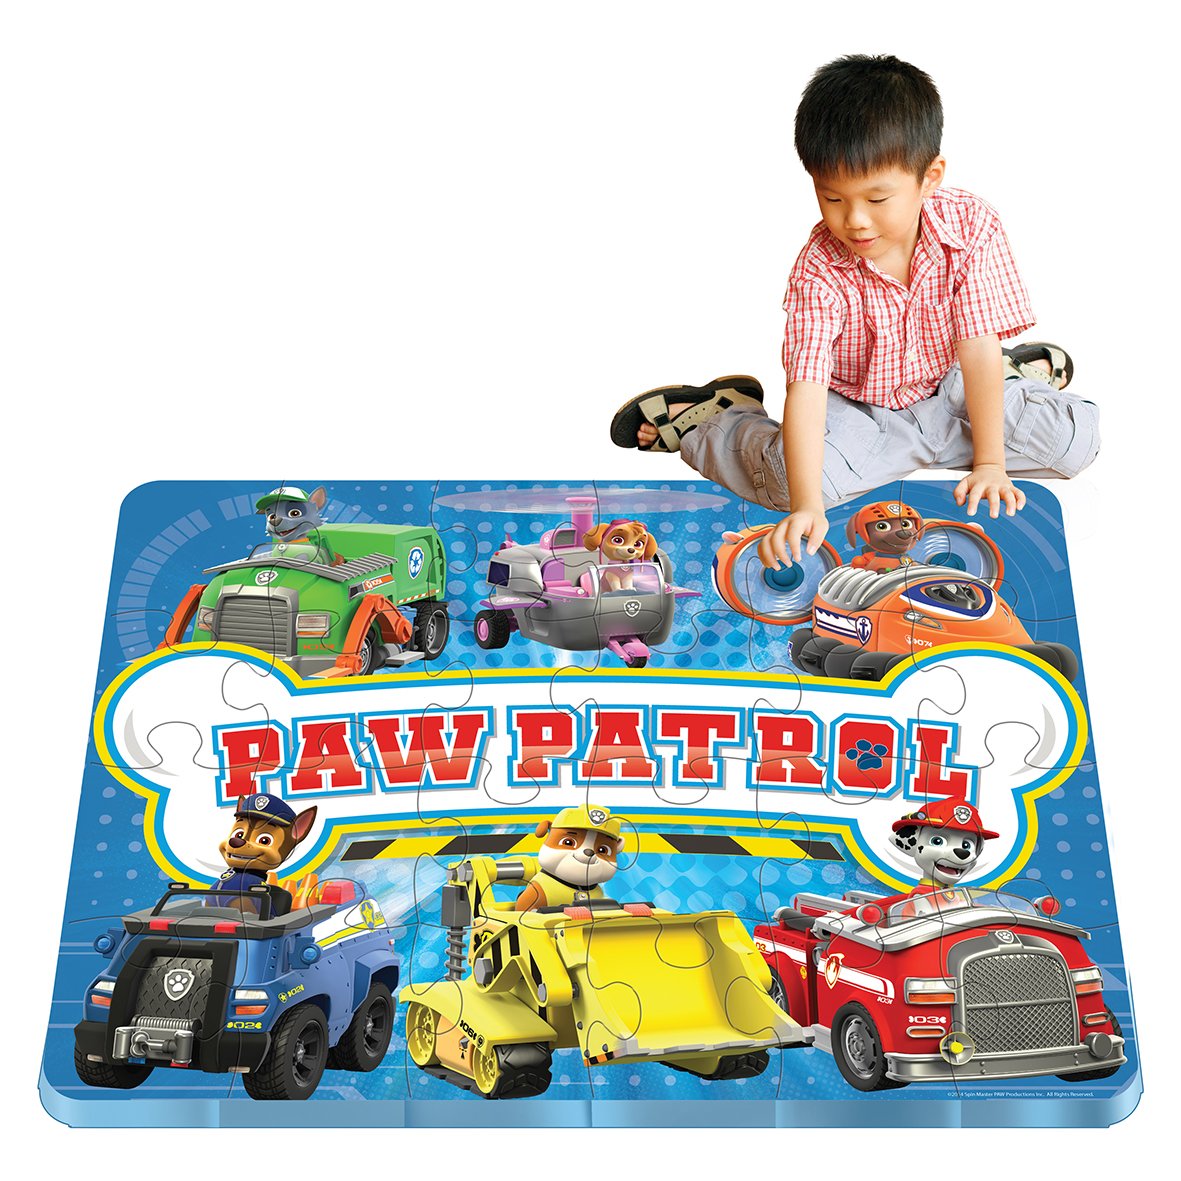 PAW PATROL 6028788 Huge Foam Floor Puzzle